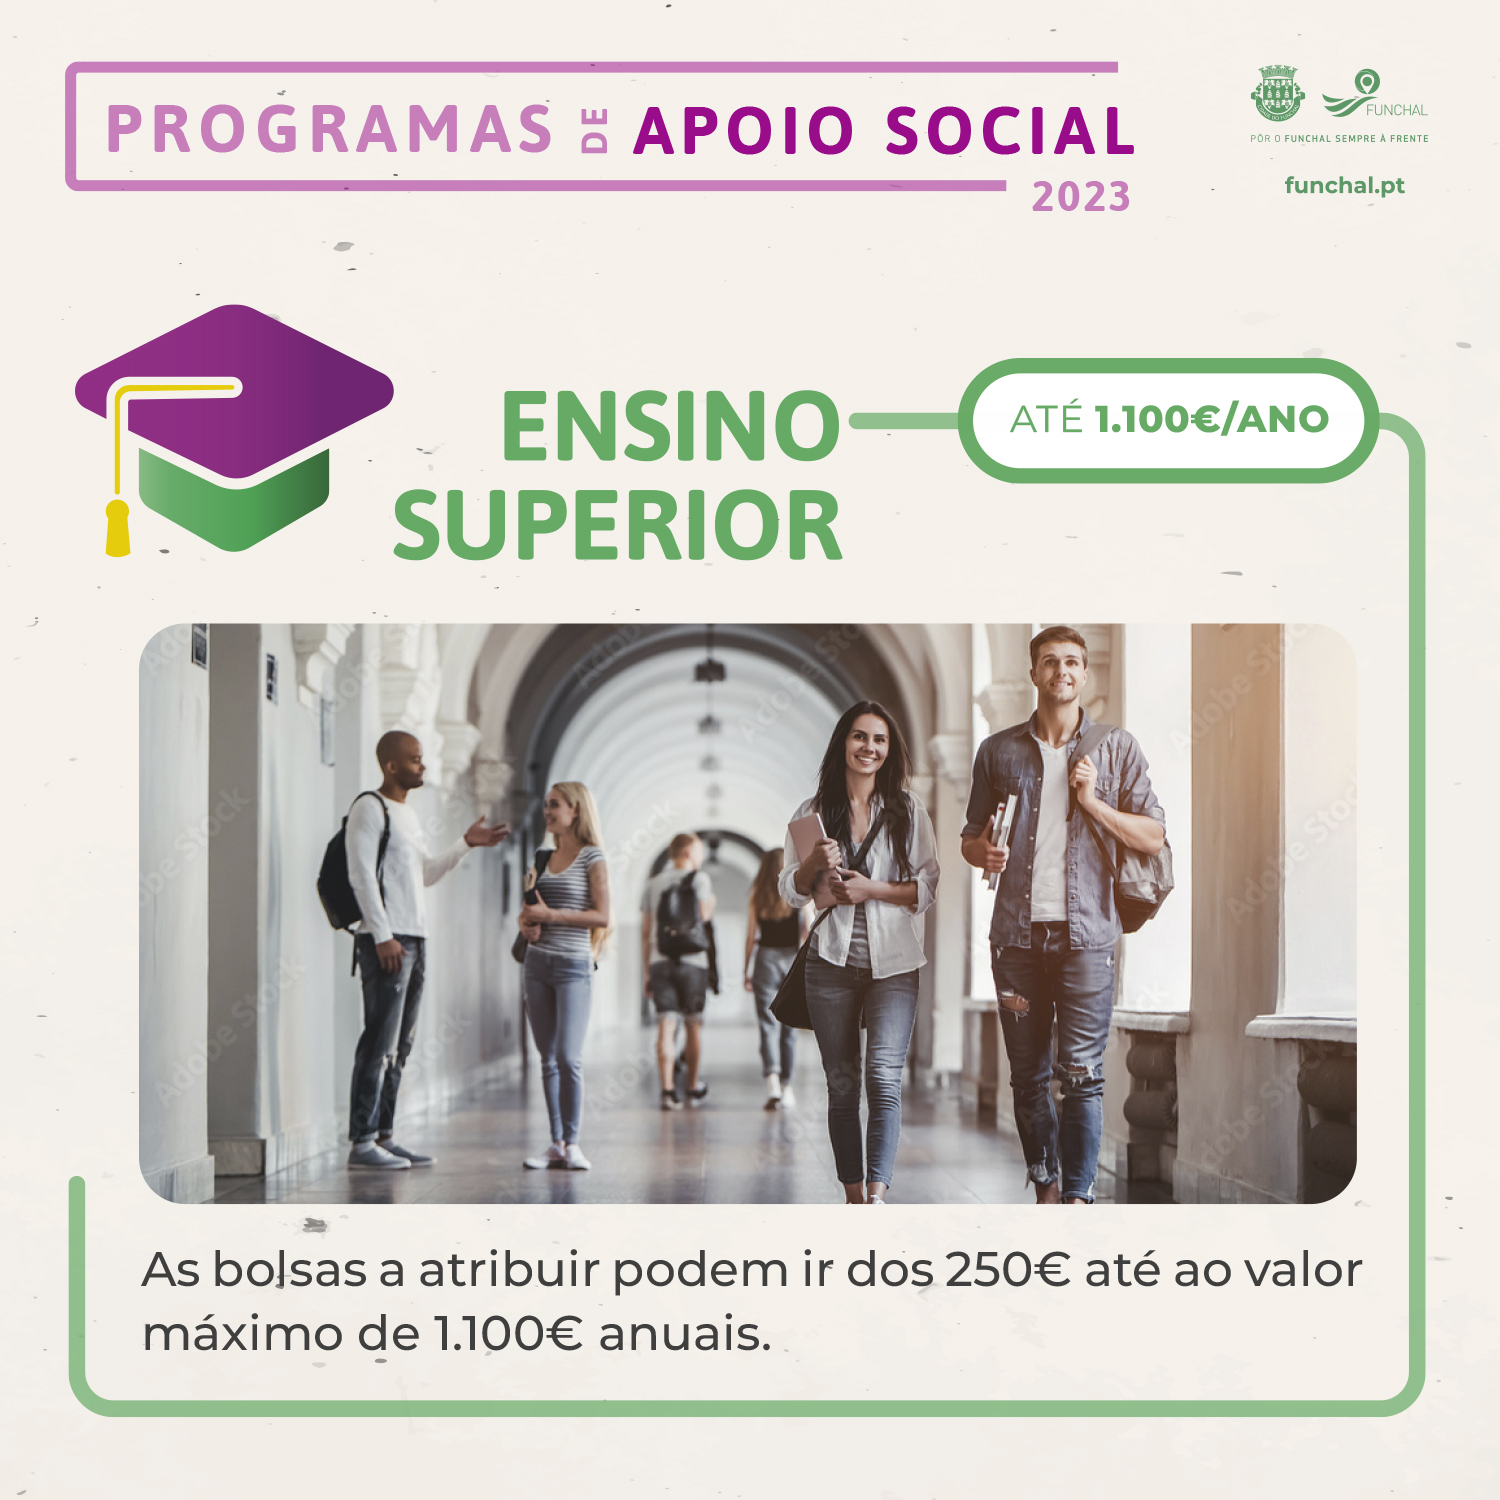 Programas de Apoio Social - Ensino Superior